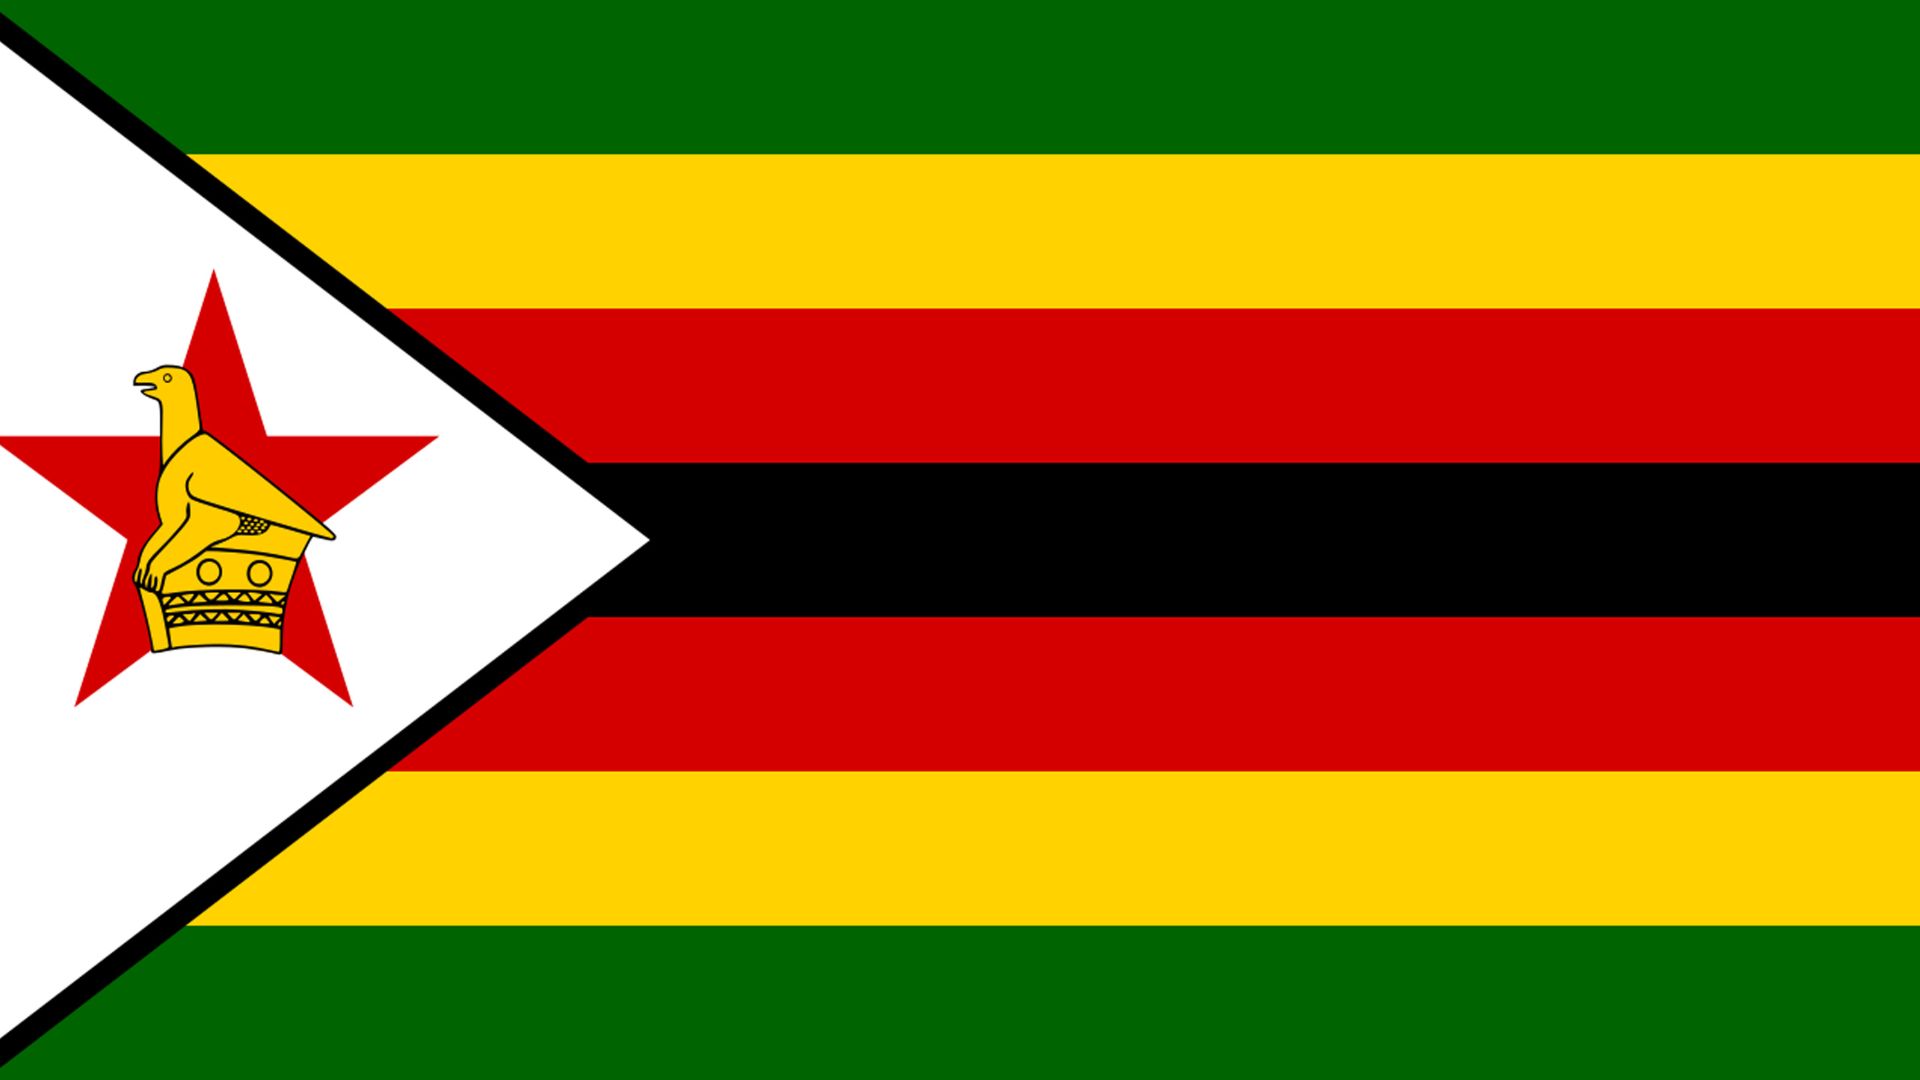 A bandeira  do Zimbabwefoi adotada em 18 de abril de 1980. Ela possui quatro cores: verde, amarelho, vermelho e preto. No lado esquerdo da bandeira, temos a imagem da ave de Zimbábue, uma estrela vermelha e um triângulo branco.